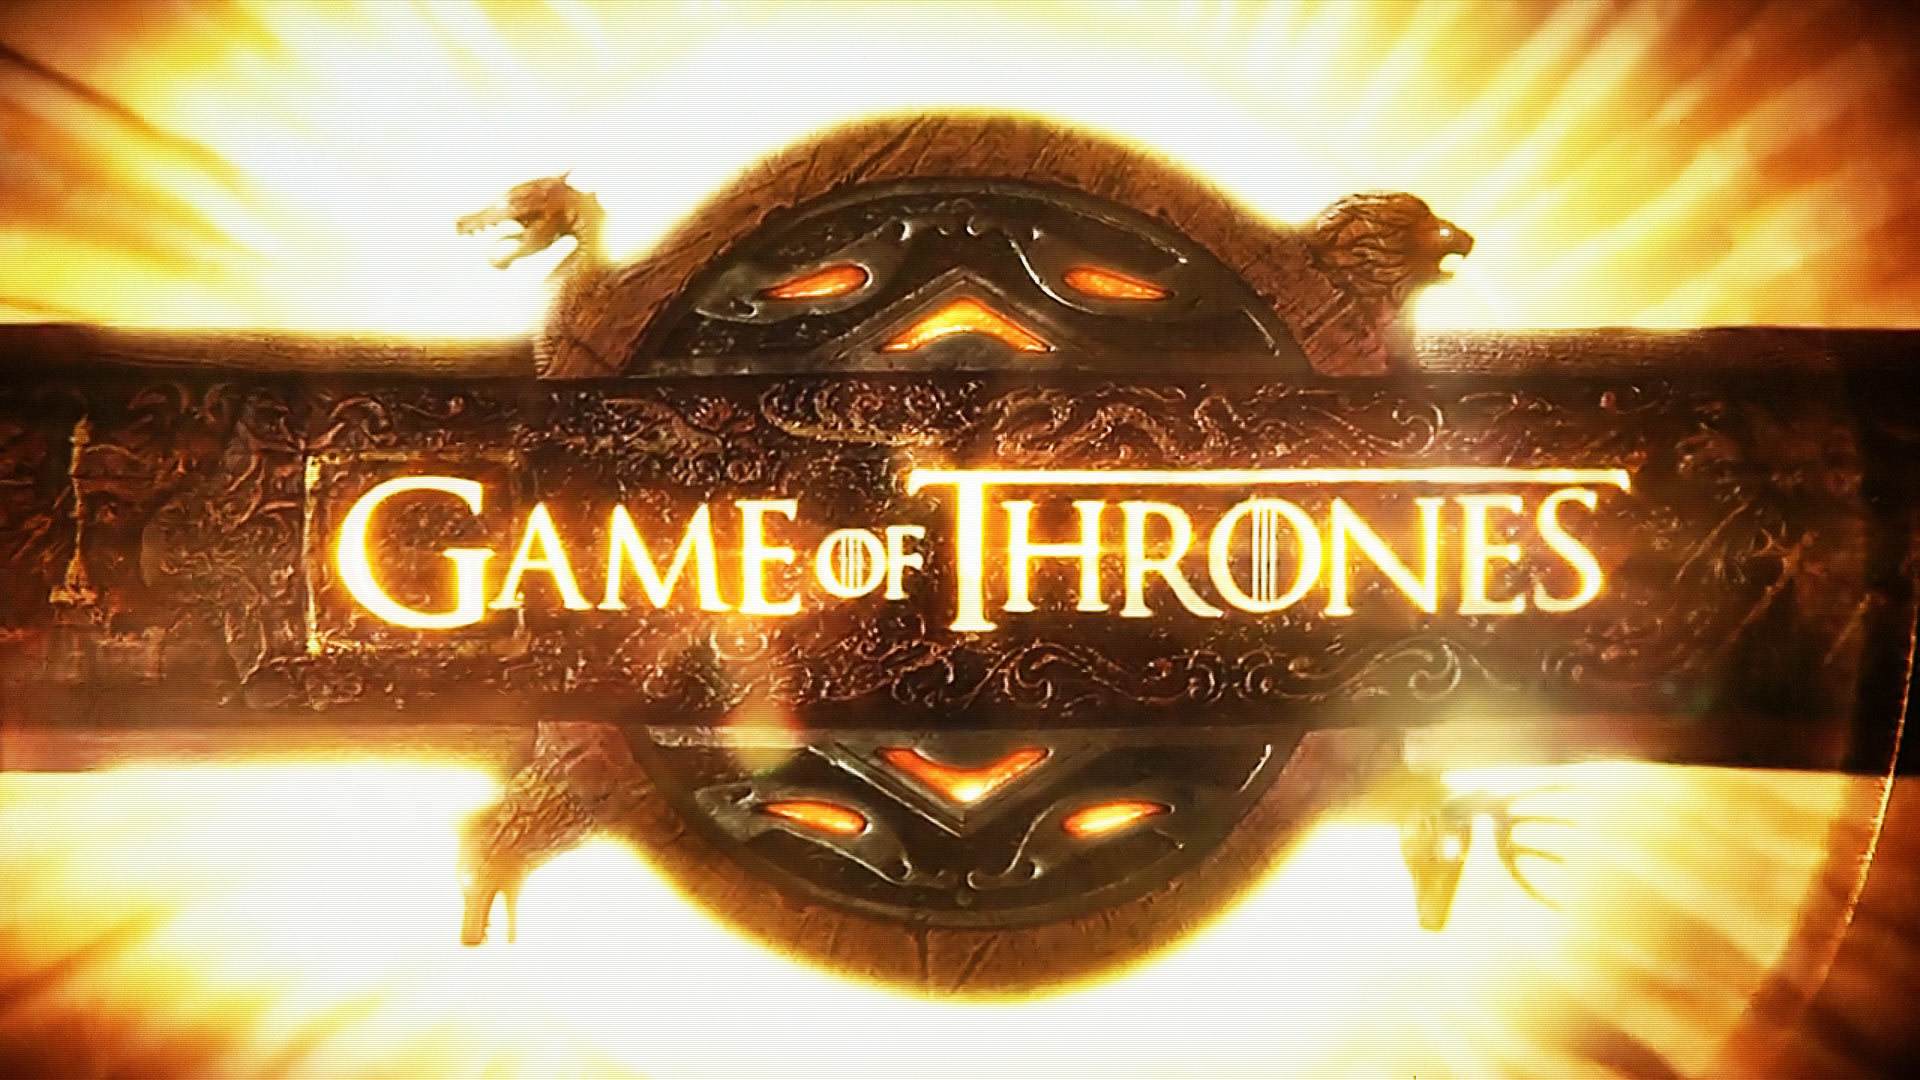  Game of Thrones script ‘stolen in HBO hack’